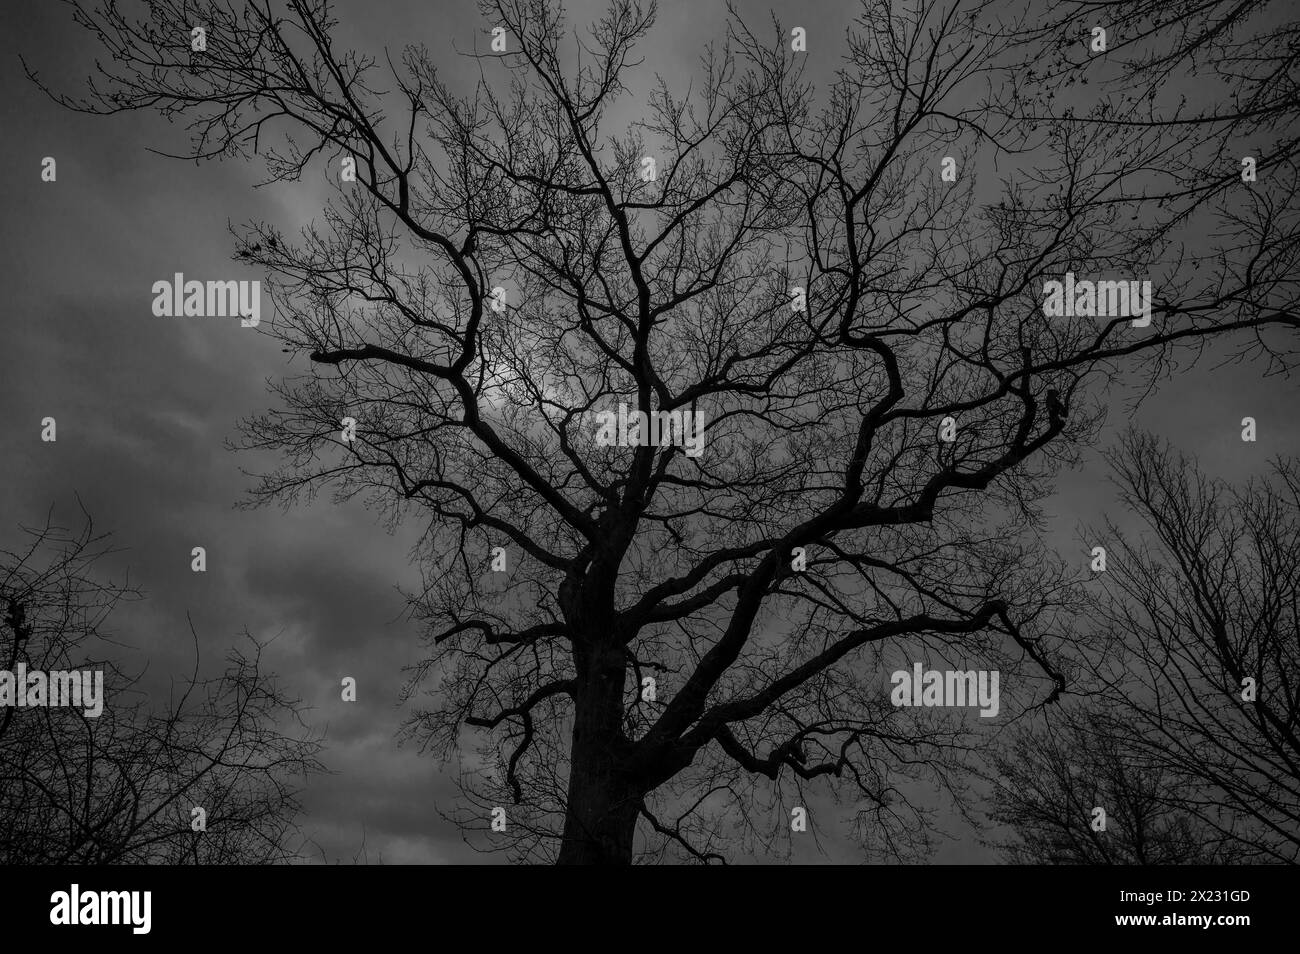 Dramatique, fantomatique, chêne (Quercus) silhouetté contre le ciel pluvieux Mecklenburg-Vorpommern, Allemagne Banque D'Images